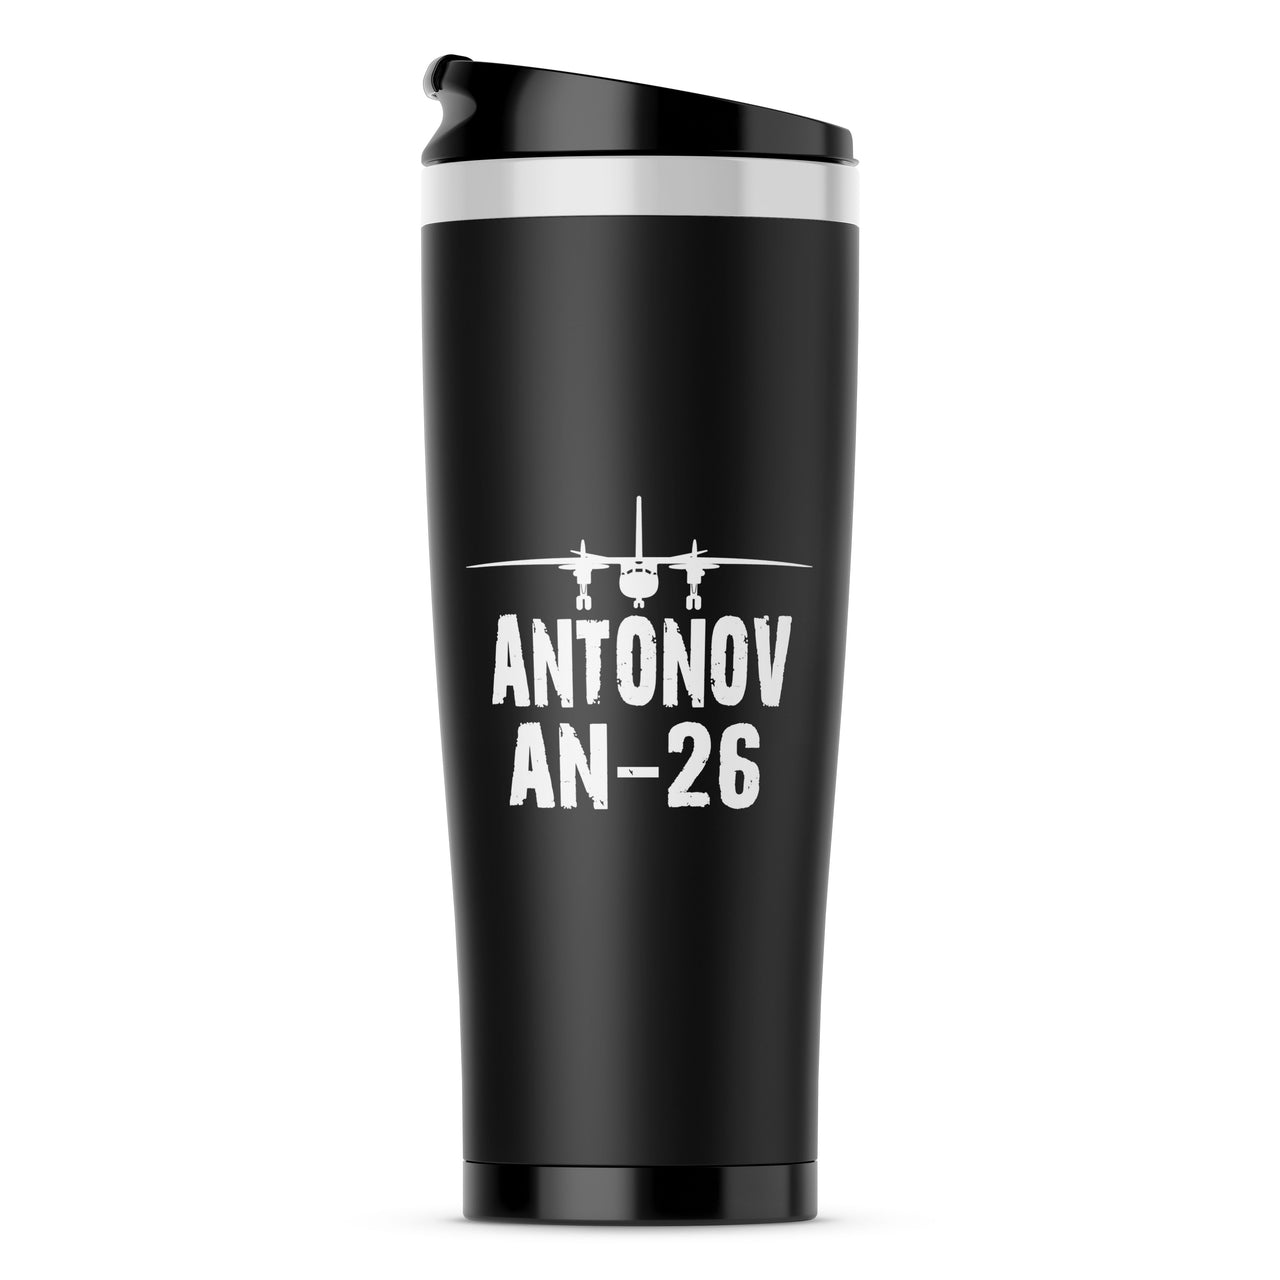 Antonov AN-26 & Plane Designed Travel Mugs